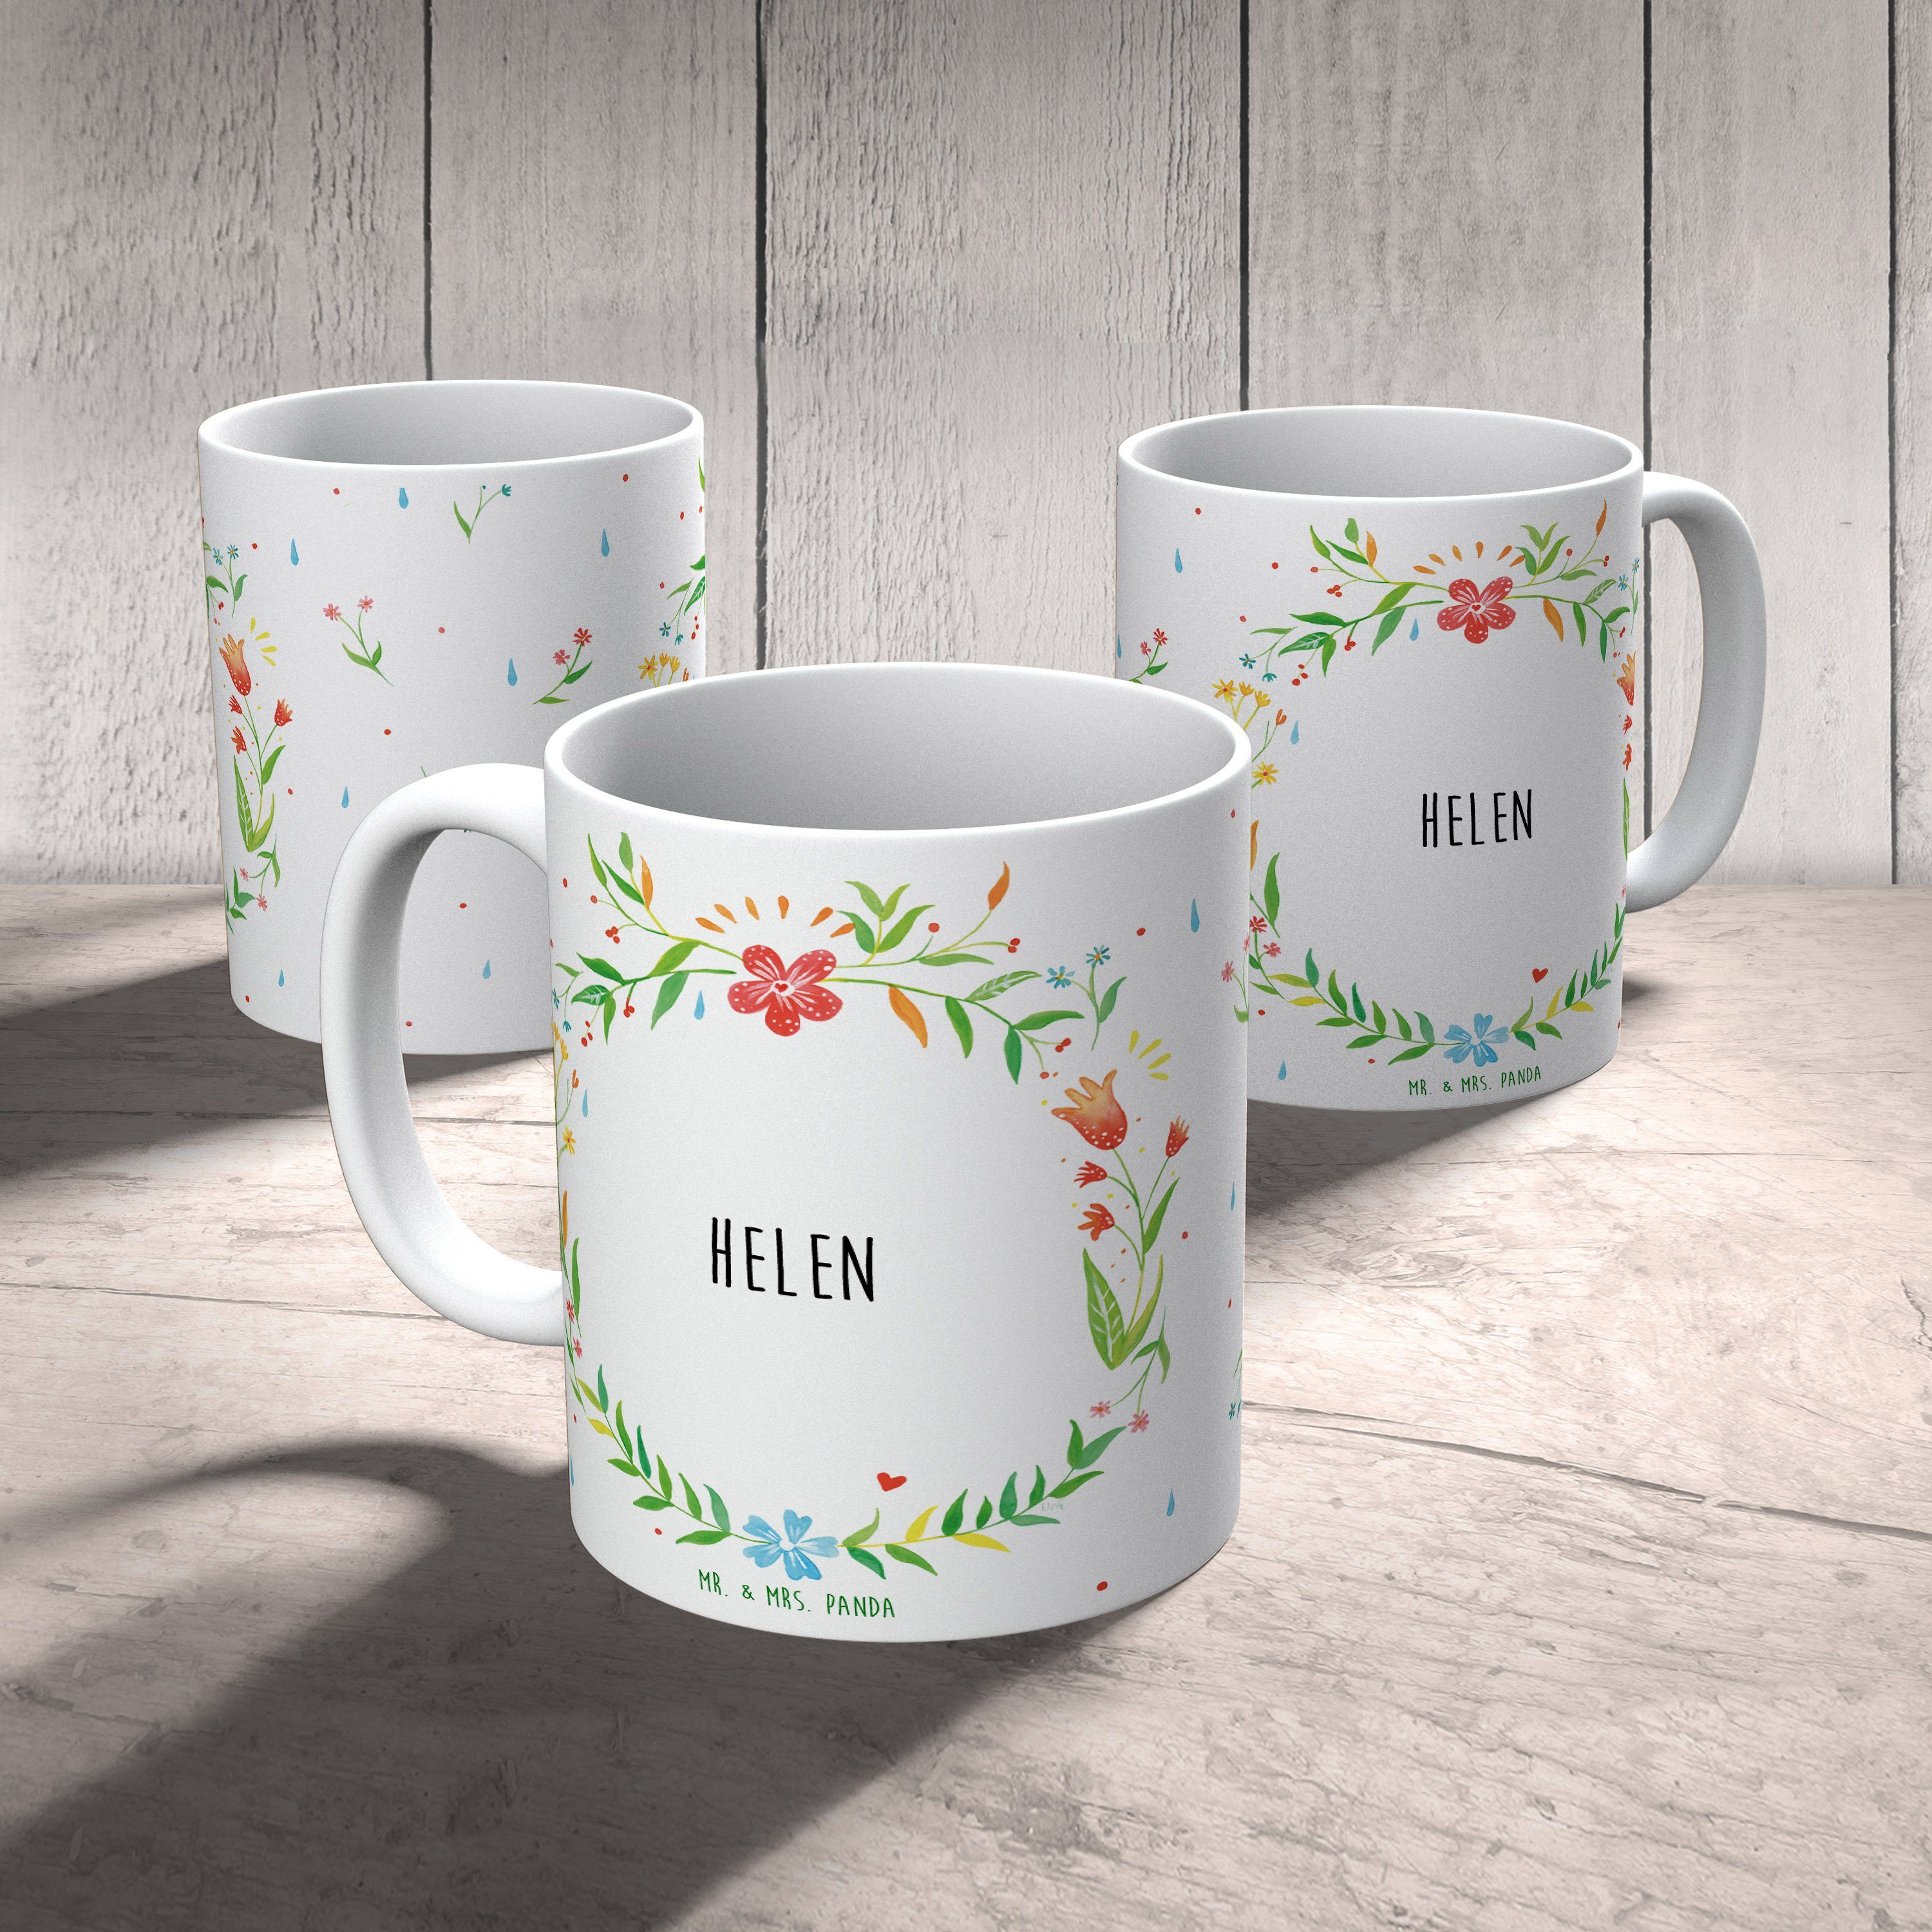 Tasse, Helen Tasse Geschenk, Mr. Geschenk, Becher, Kaffeetasse, & Keramik - Keramiktasse, Mrs. Panda